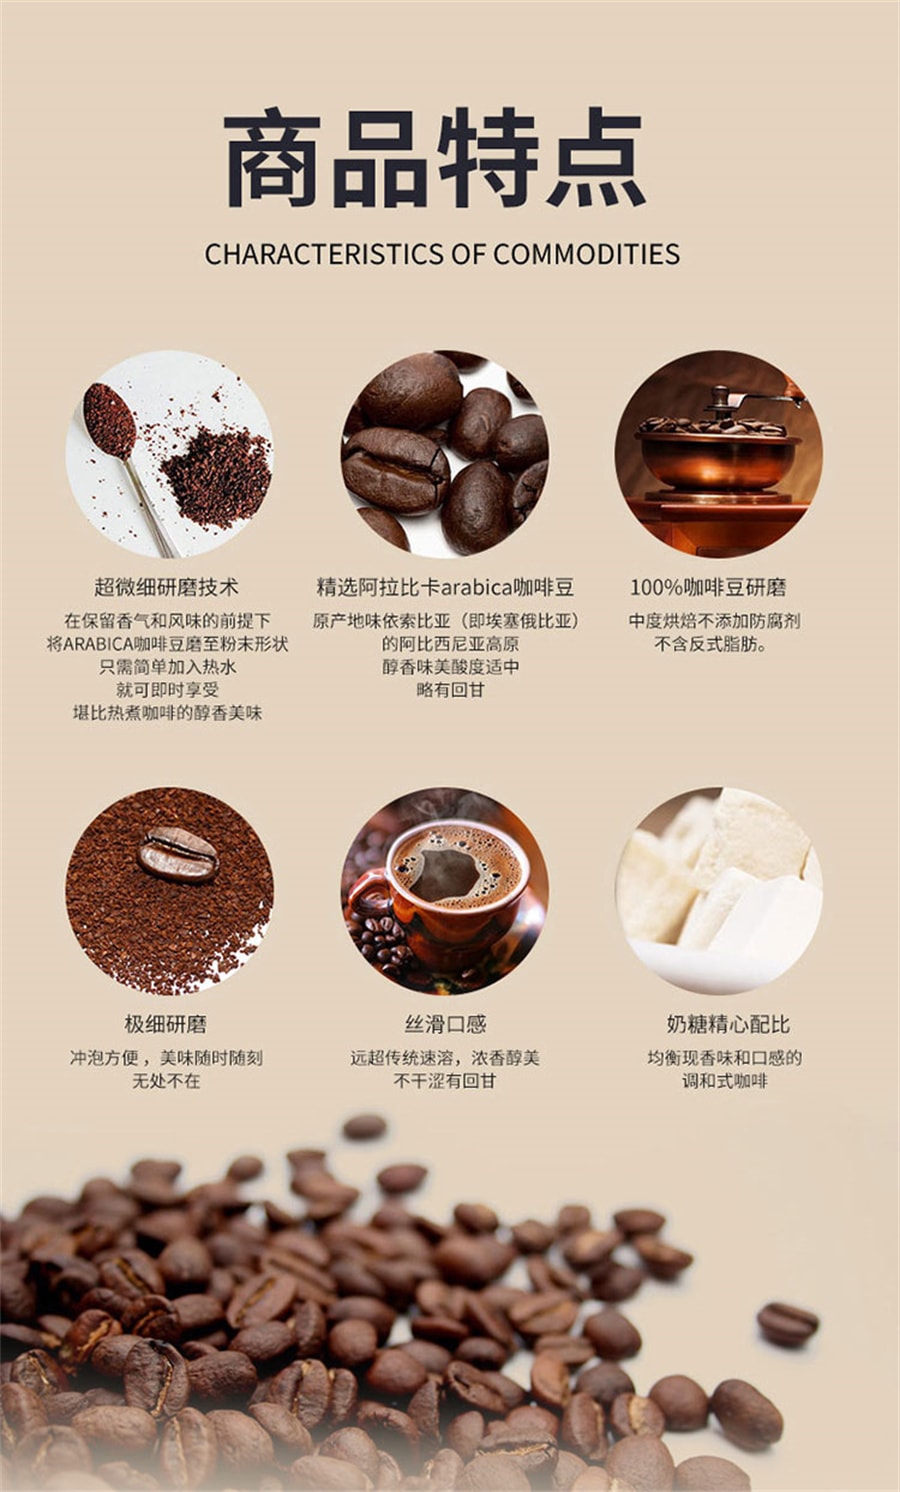 【中國直郵】多燕瘦 黑咖啡無糖0脂即溶美式濃縮沖飲咖非減脂粉 2g*20袋